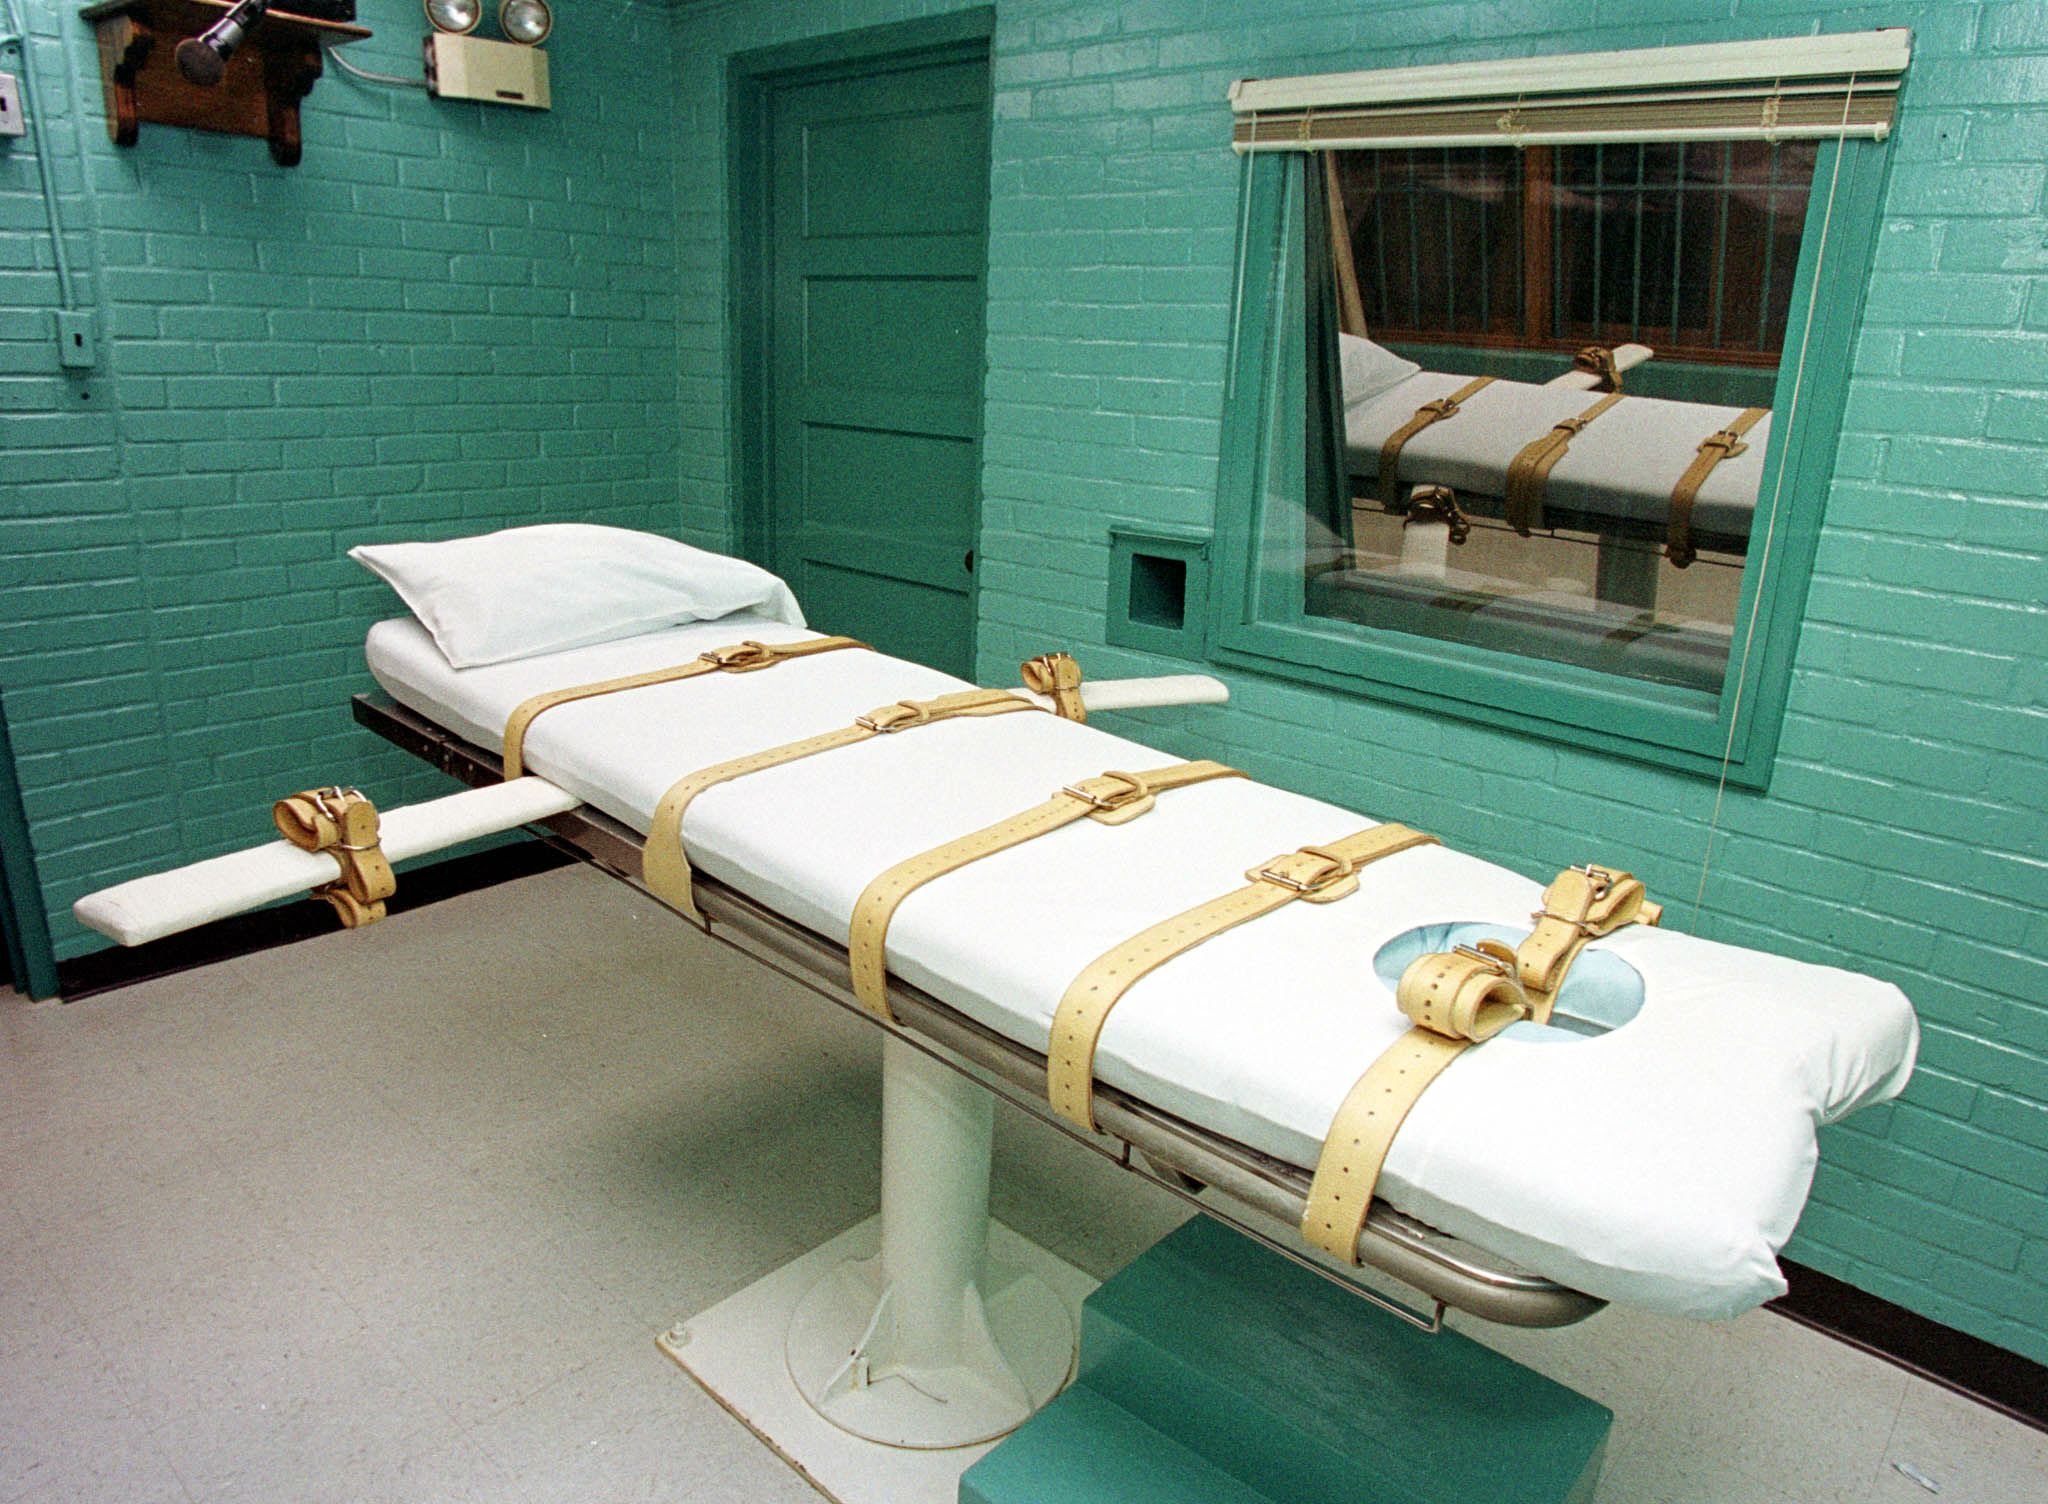 Az amerikai legfelsőbb bíróság leállított egy texasi kivégzést